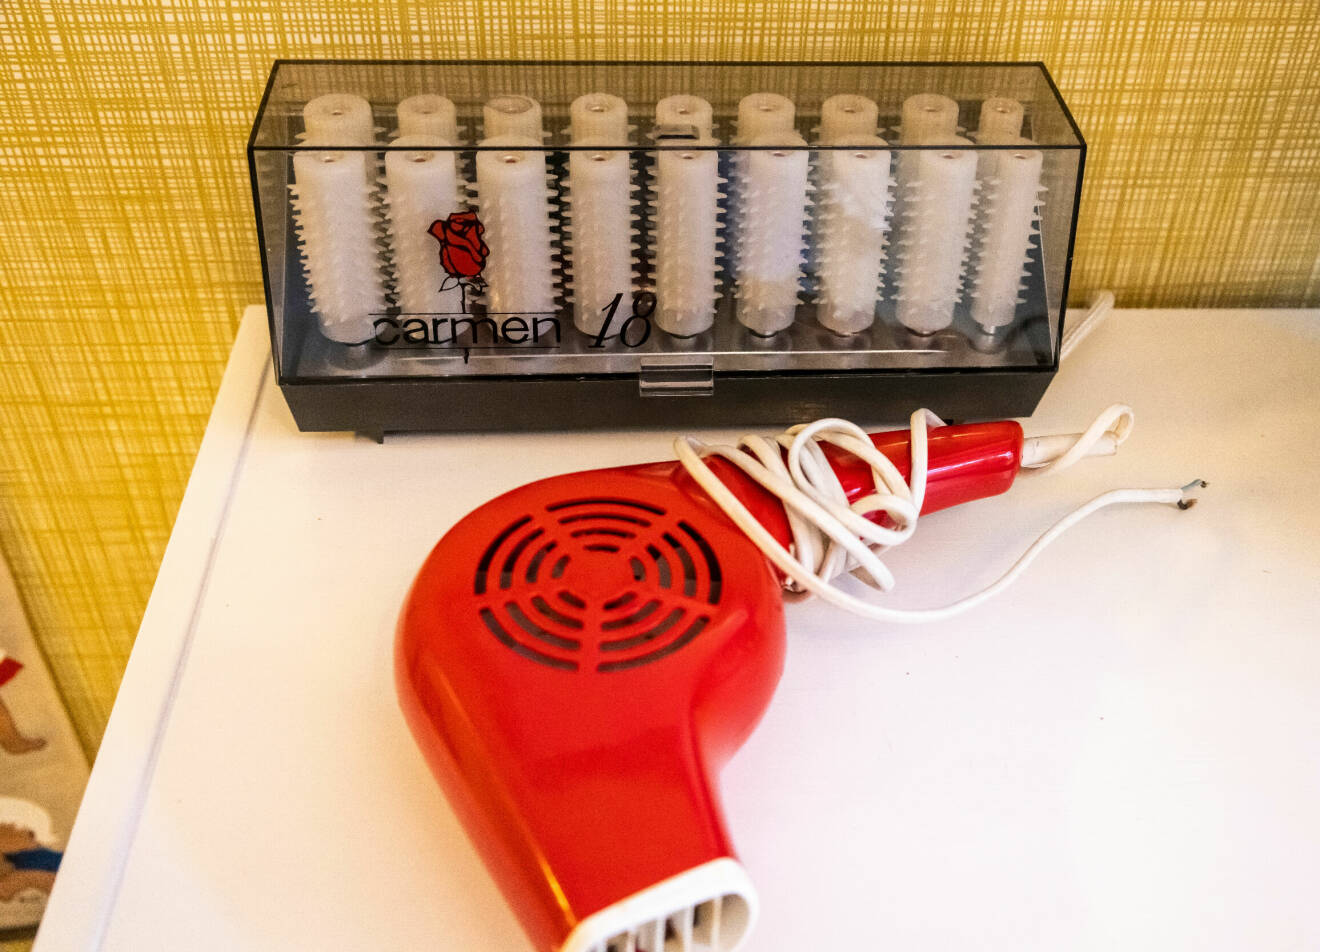 En hårfön i röd plast och en ask med värmespolar står ovanpå en tvättmaskin i en lägenhet som inretts enligt 70-talet.